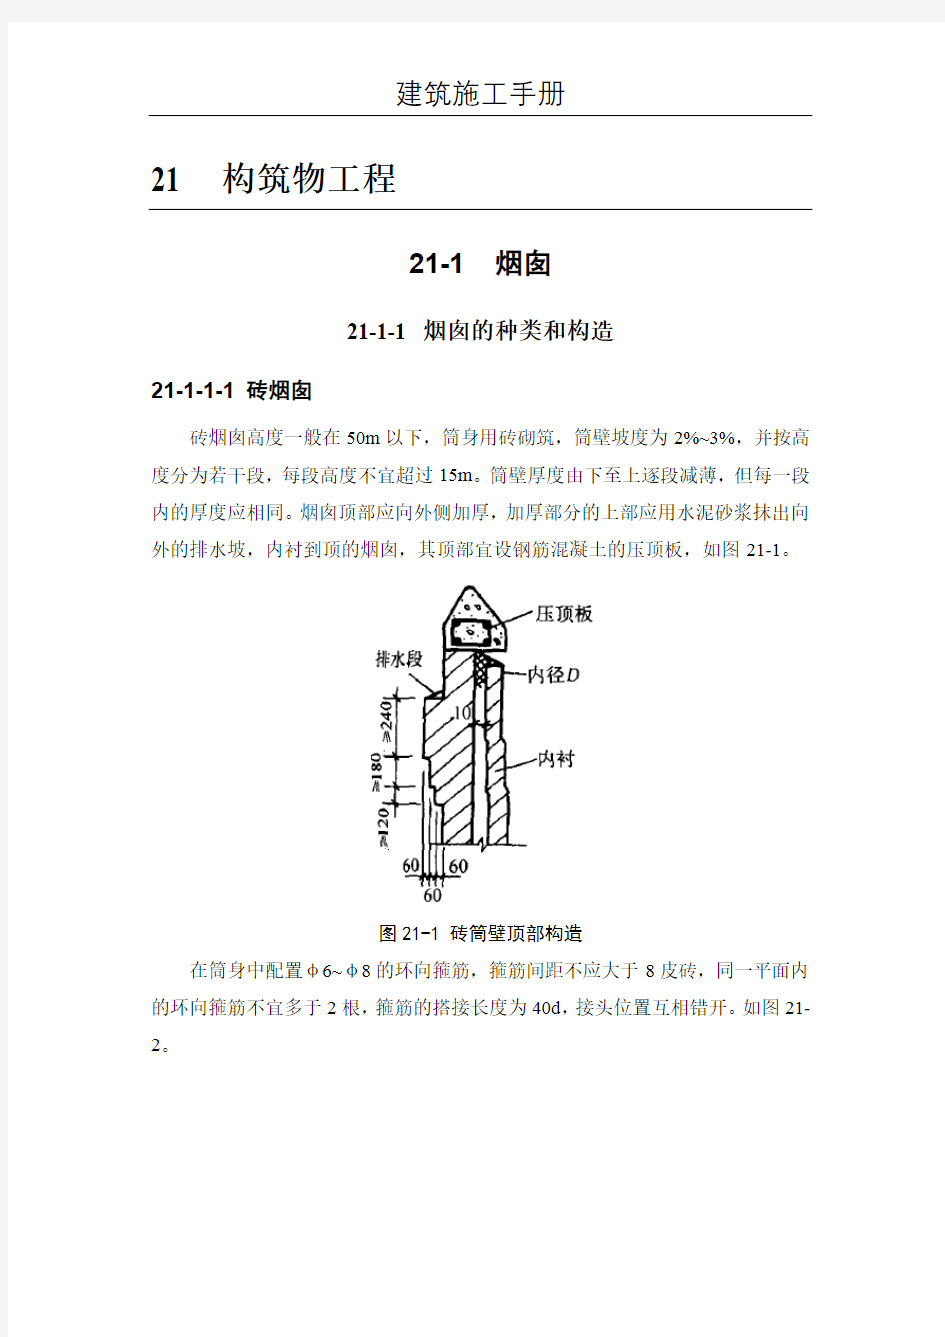 (建筑施工手册)21构筑物工程(21-1 烟囱;21-2 水塔)